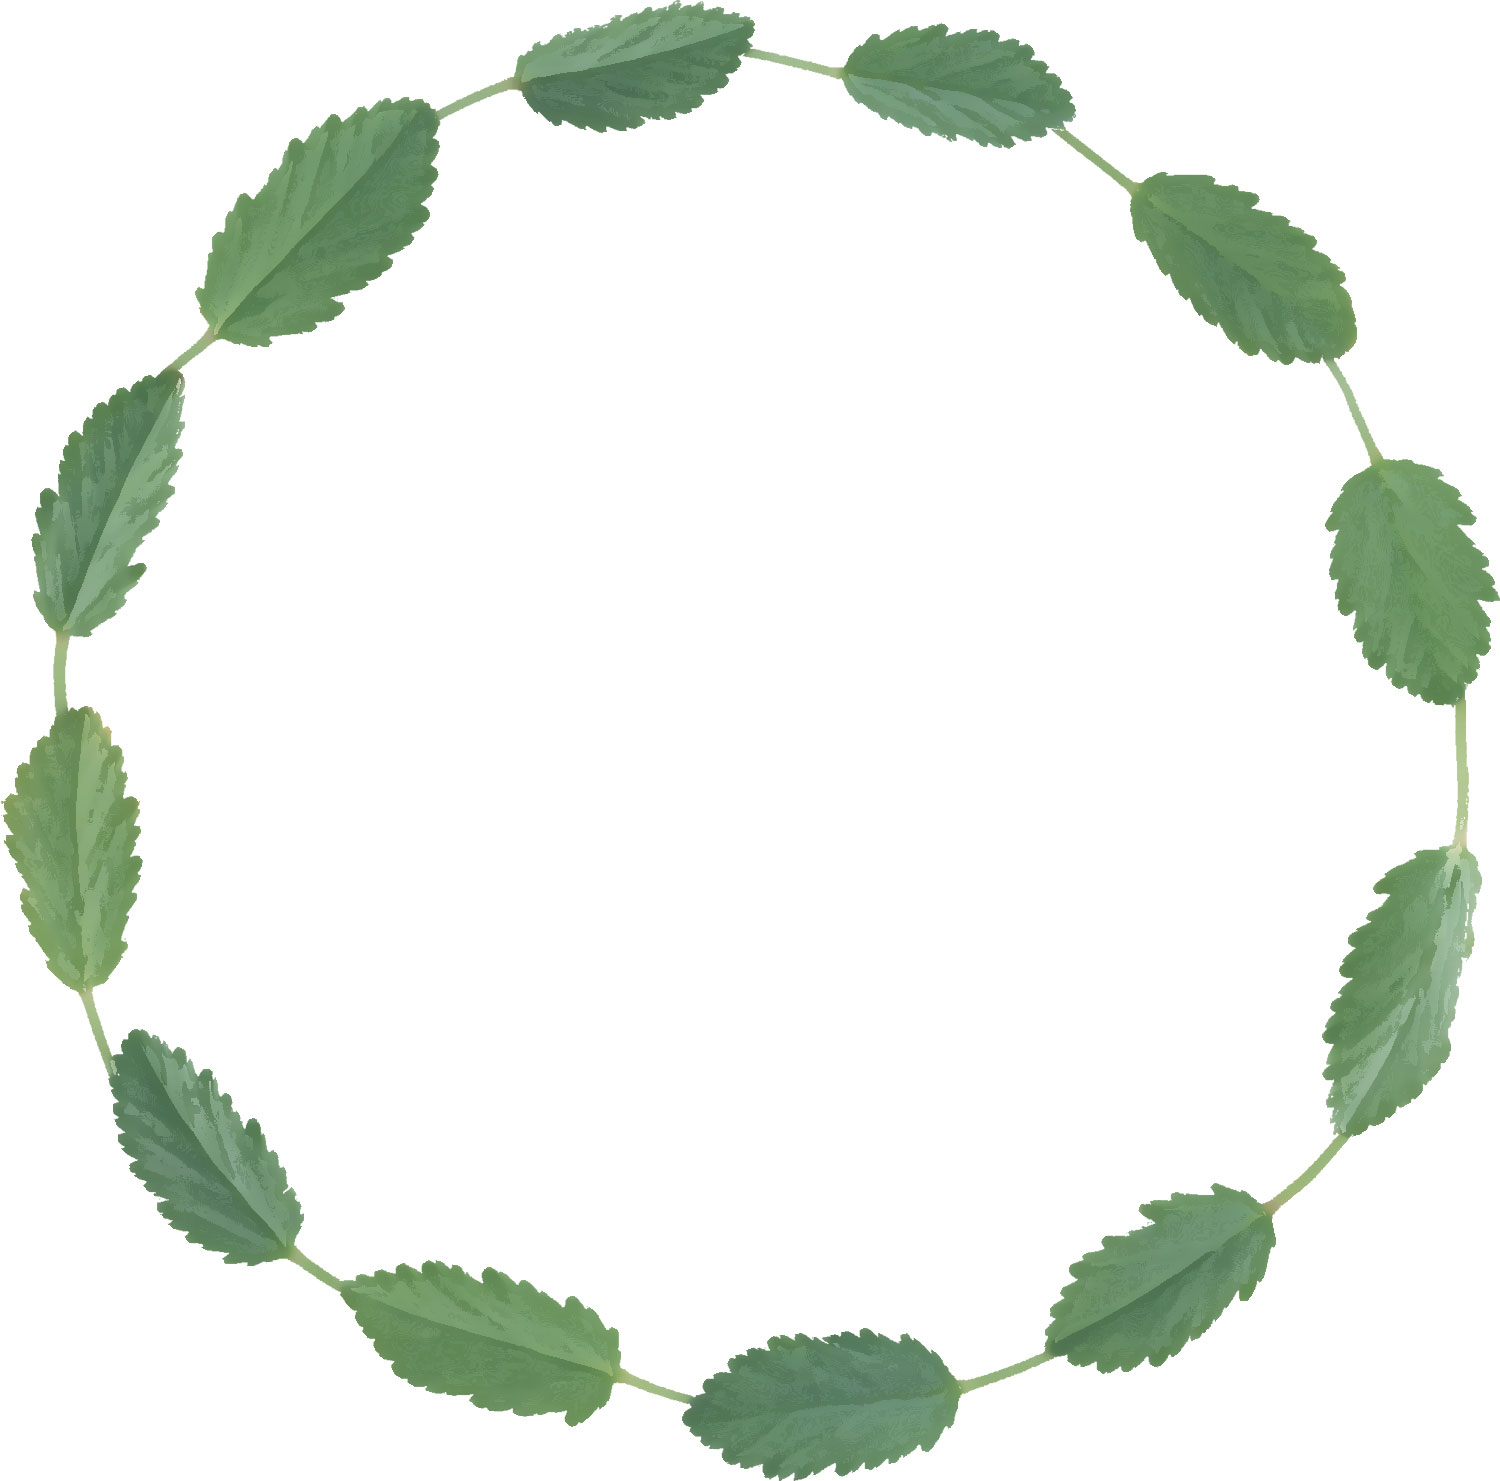 葉っぱ 草木のイラスト フリー素材 フレーム枠no 091 茎葉 緑 輪